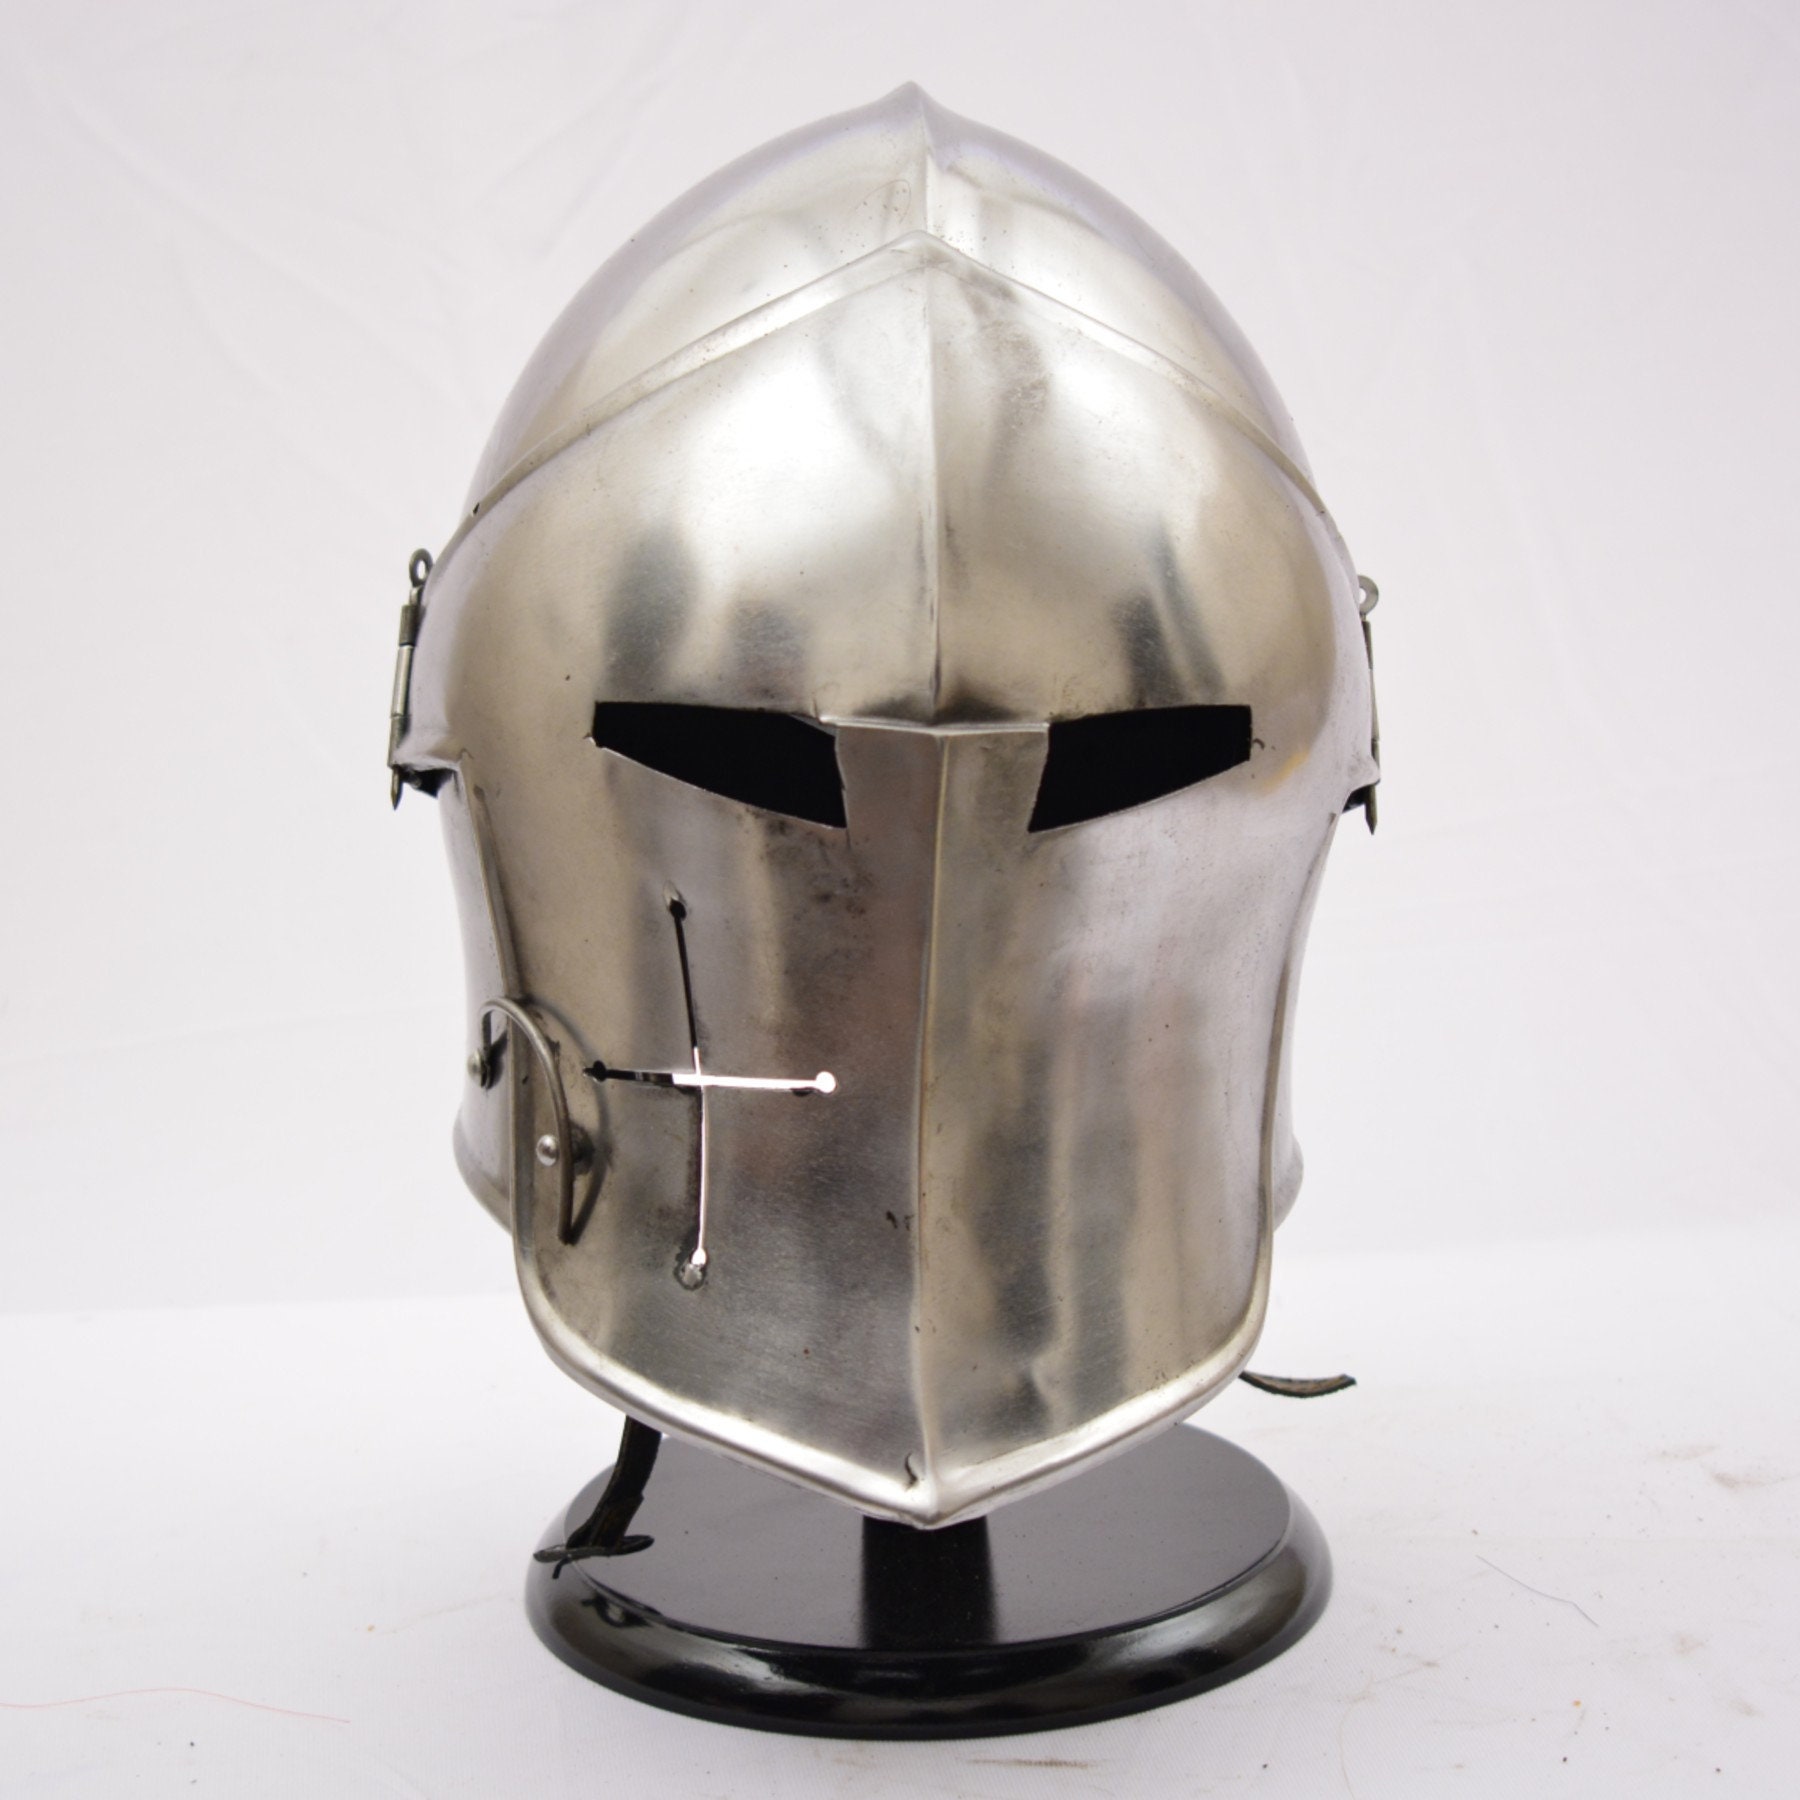 Armor MEDIEVAL Barbuta Helmet Knights Templar Crusader Armour Helmet SCA GIFT 